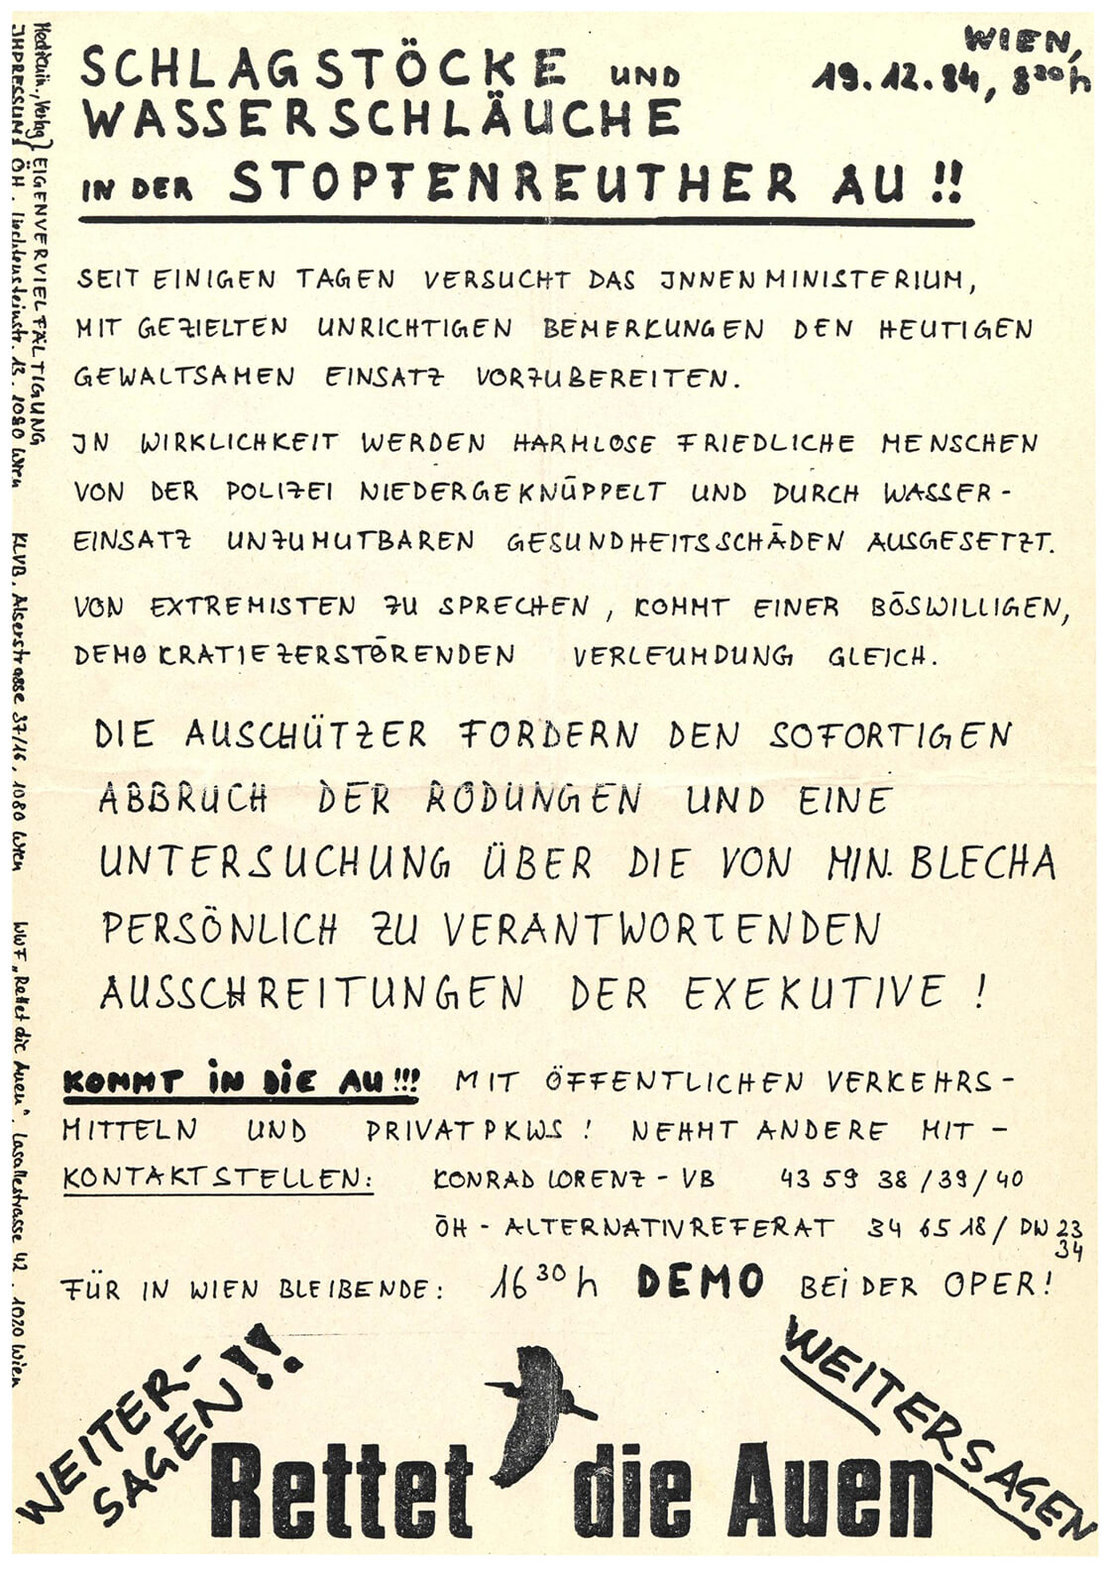 Protest-Flugblätter zu Hainburg, 1984, Wien Museum 